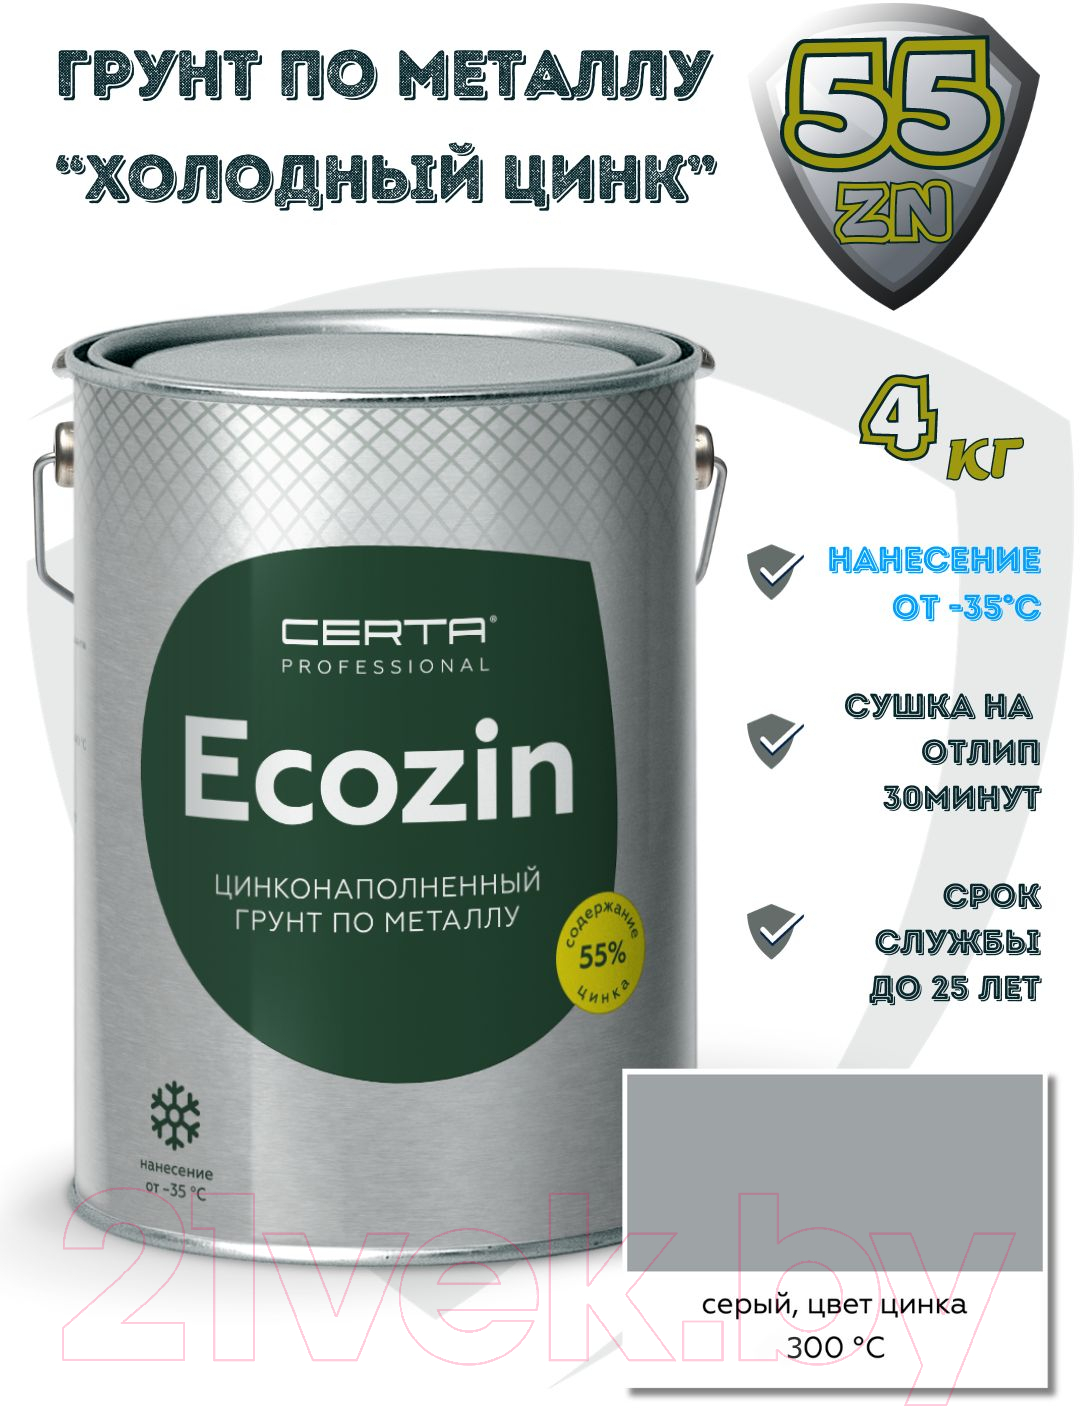 Средство от коррозии Certa Ecozin-А до 300°С